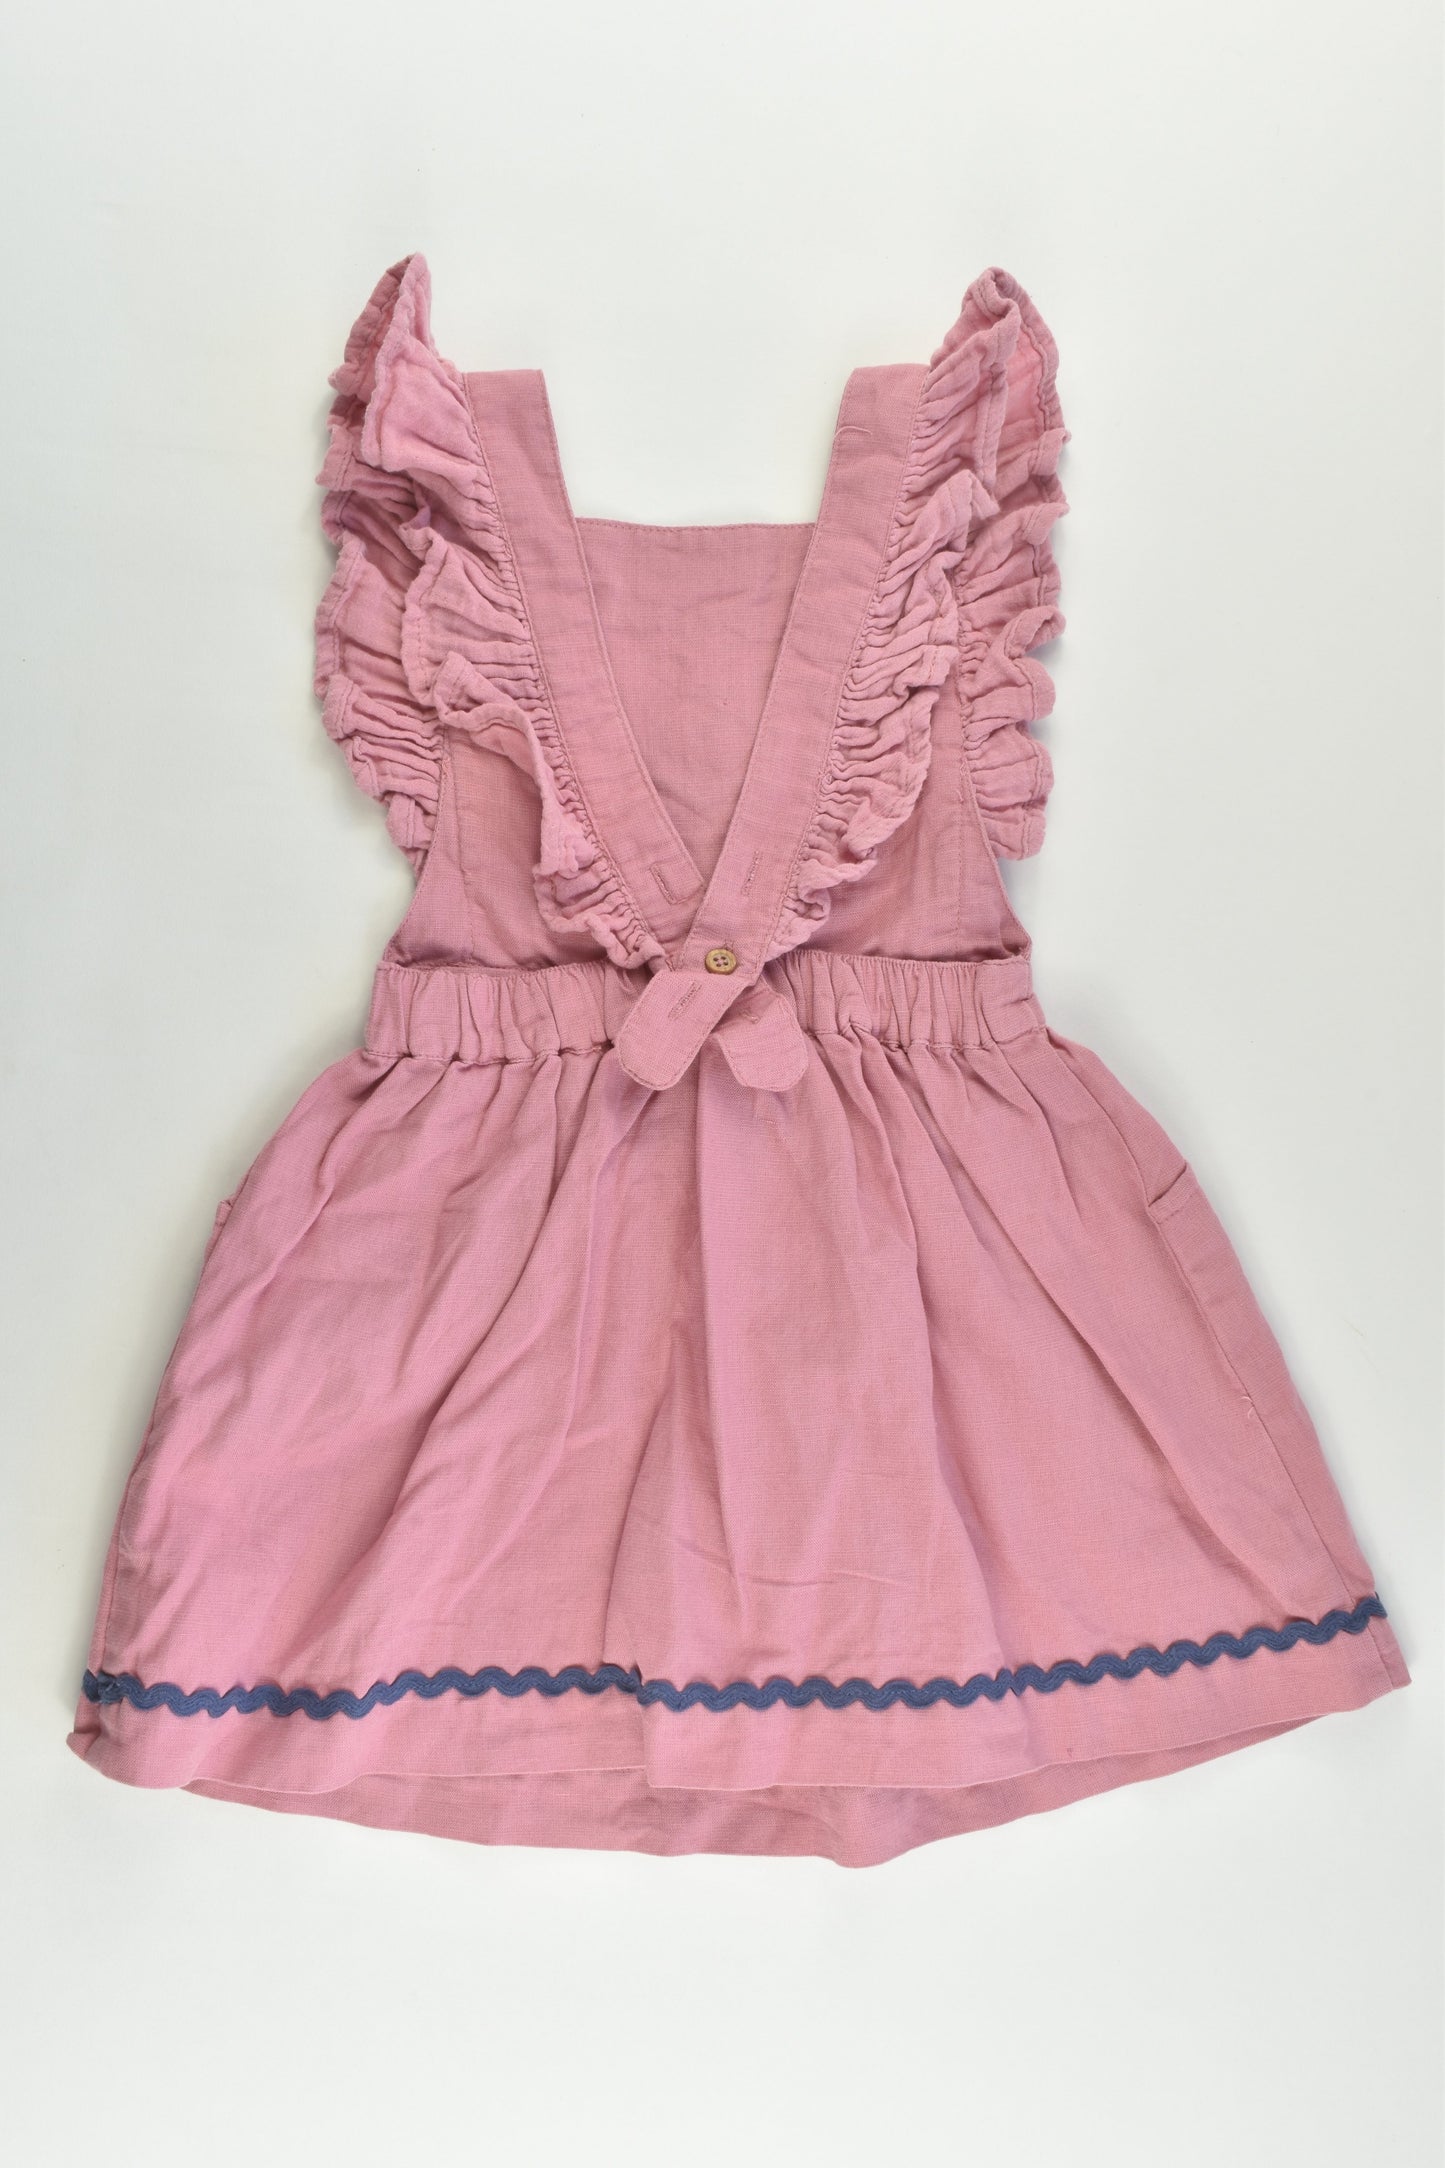 Jack & Milly Size 2 Cotton/Linen Dress